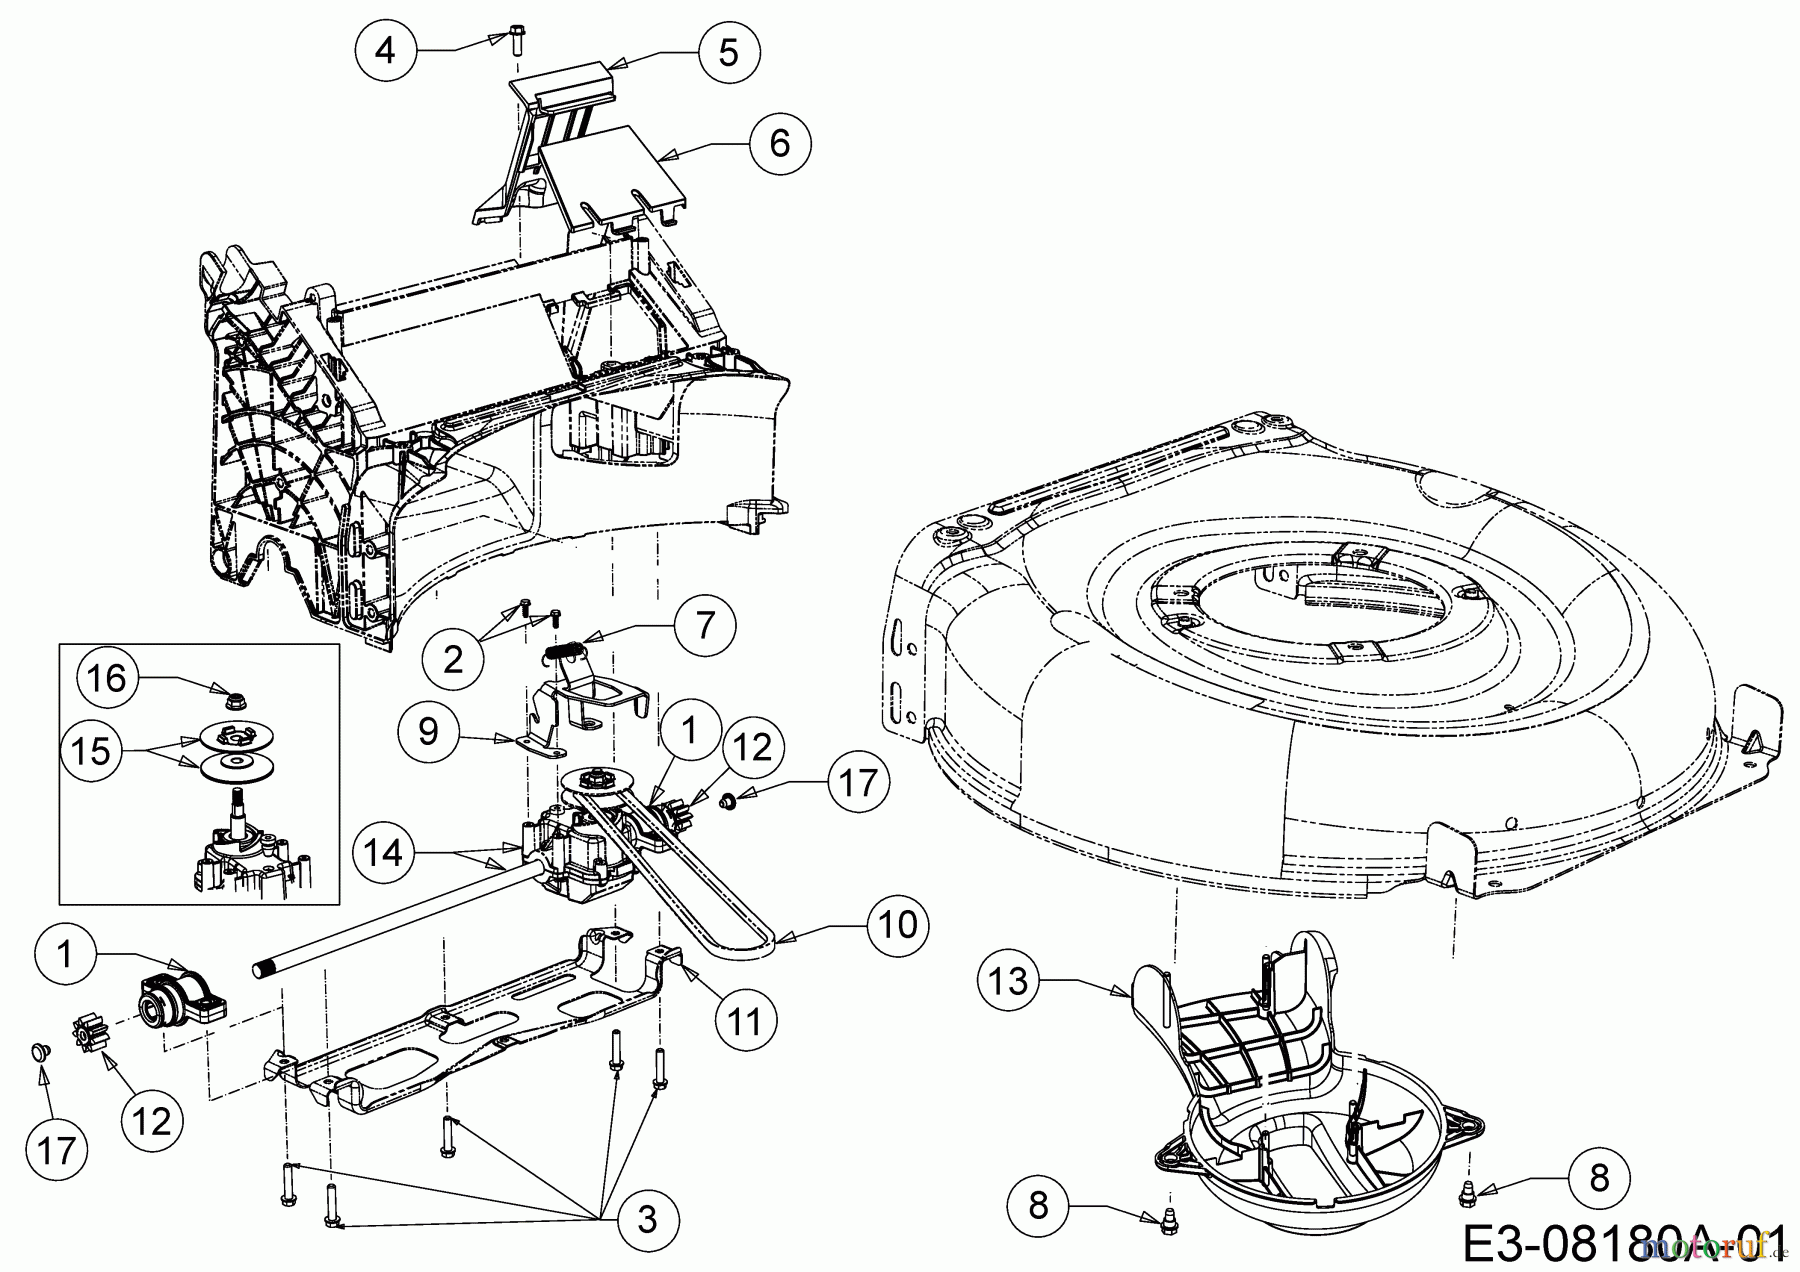  Wolf-Garten Petrol mower self propelled Expert 460 A 12A-TUKC650  (2015) Gearbox, Belt